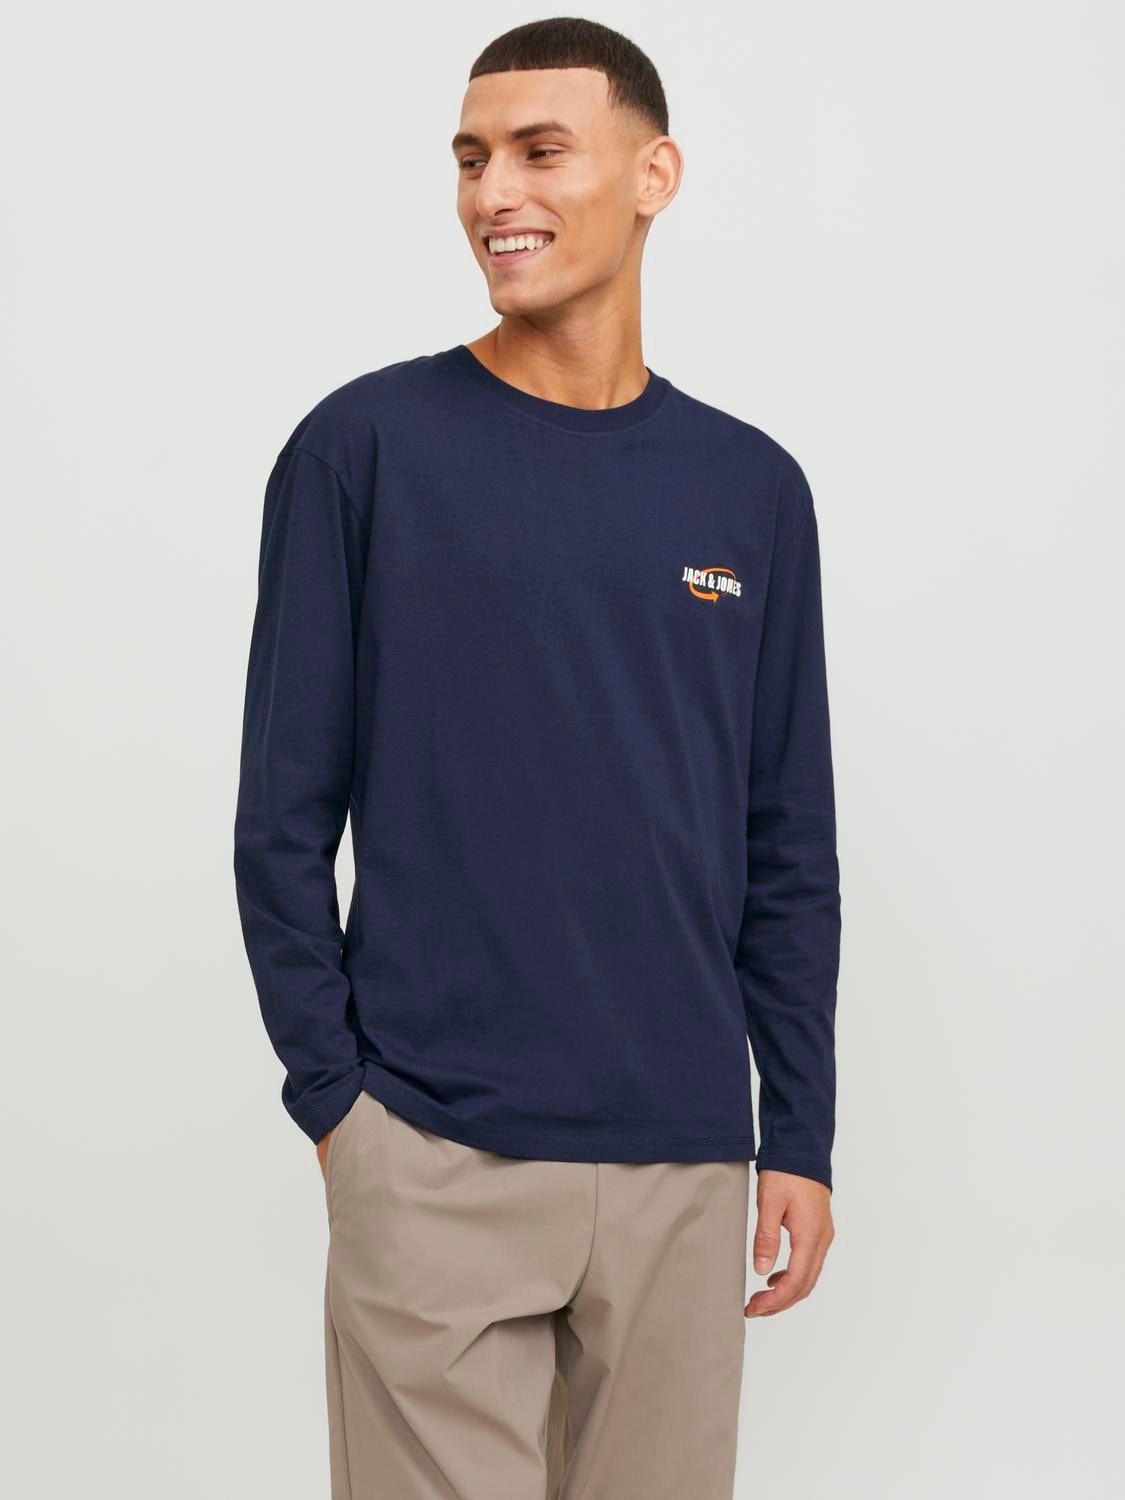 Jack & Jones Trykk O-hals T-skjorte -Navy Blazer - 12253809